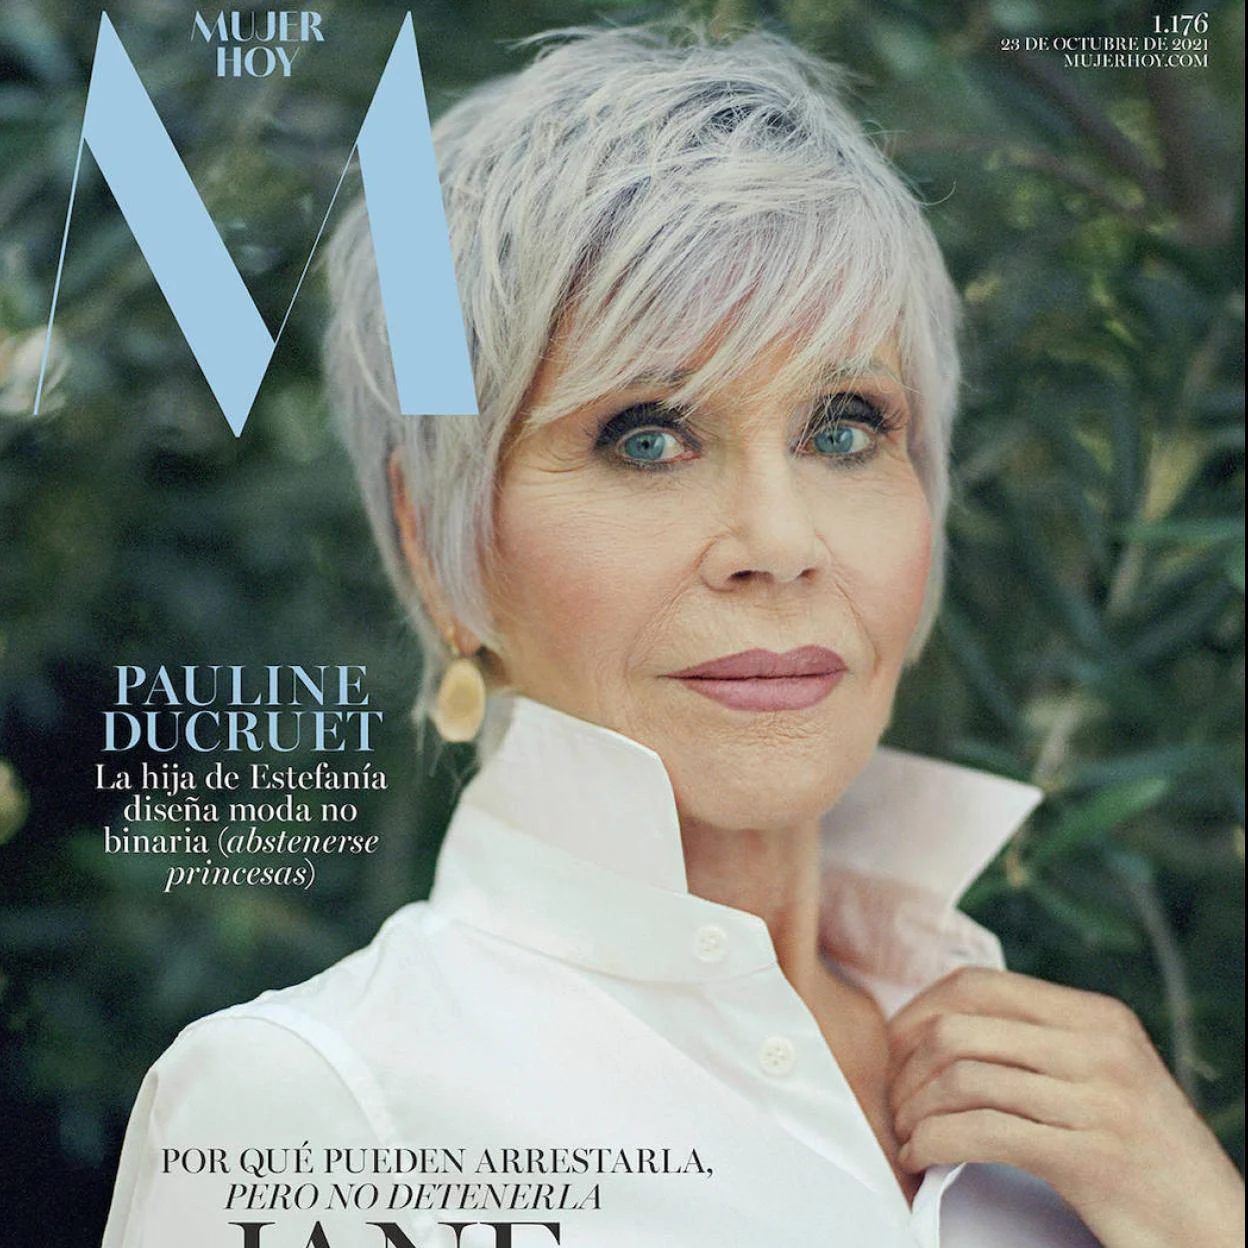 Este sábado, en Mujerhoy, Jane Fonda, la actriz que pasó de icono a  referente social | Mujer Hoy